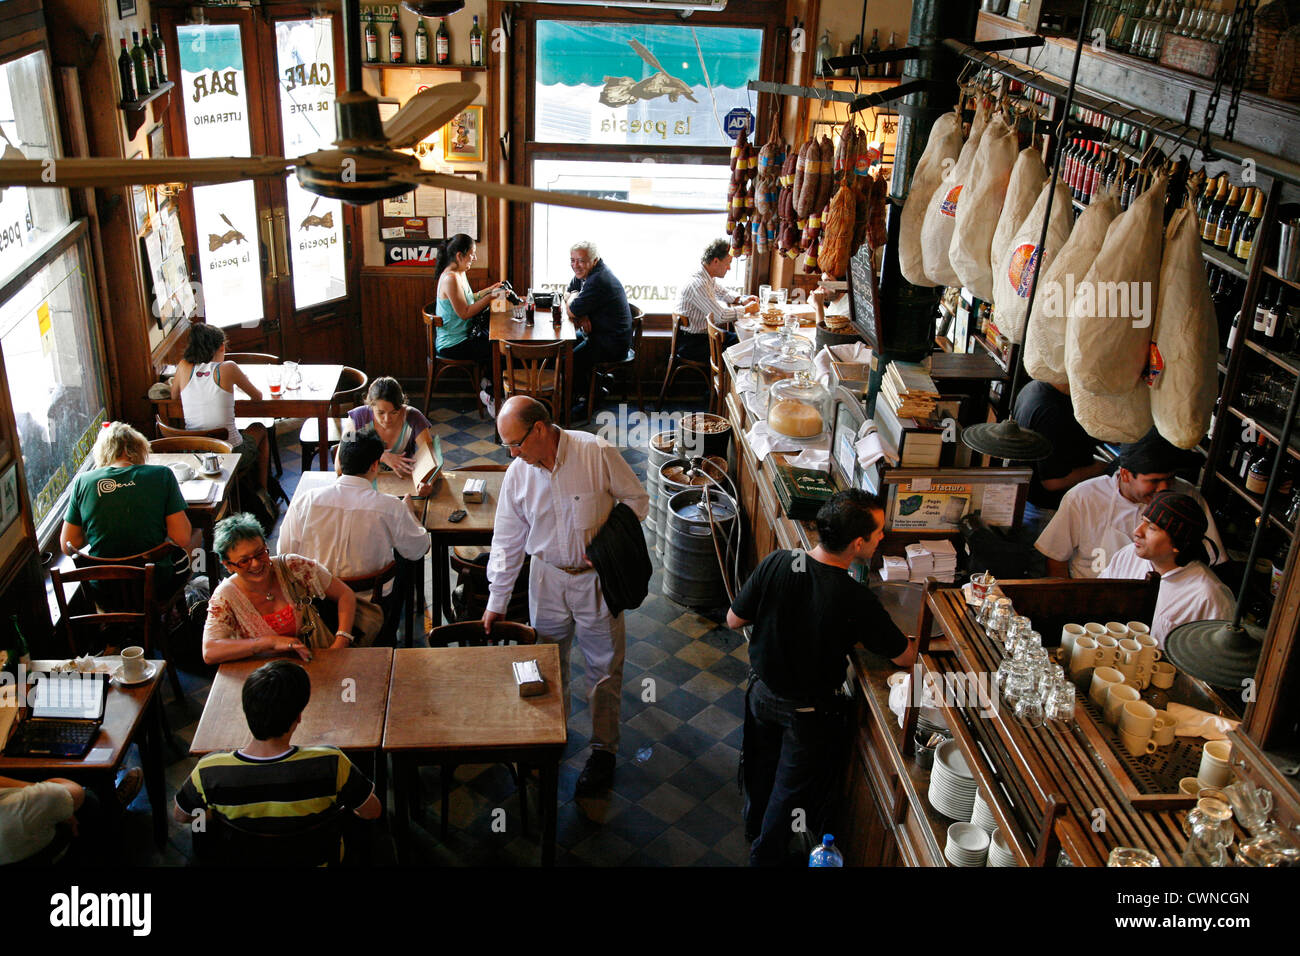 La Poesia Bar und Restaurant, San Telmo, Buenos Aires, Argentinien. Stockfoto